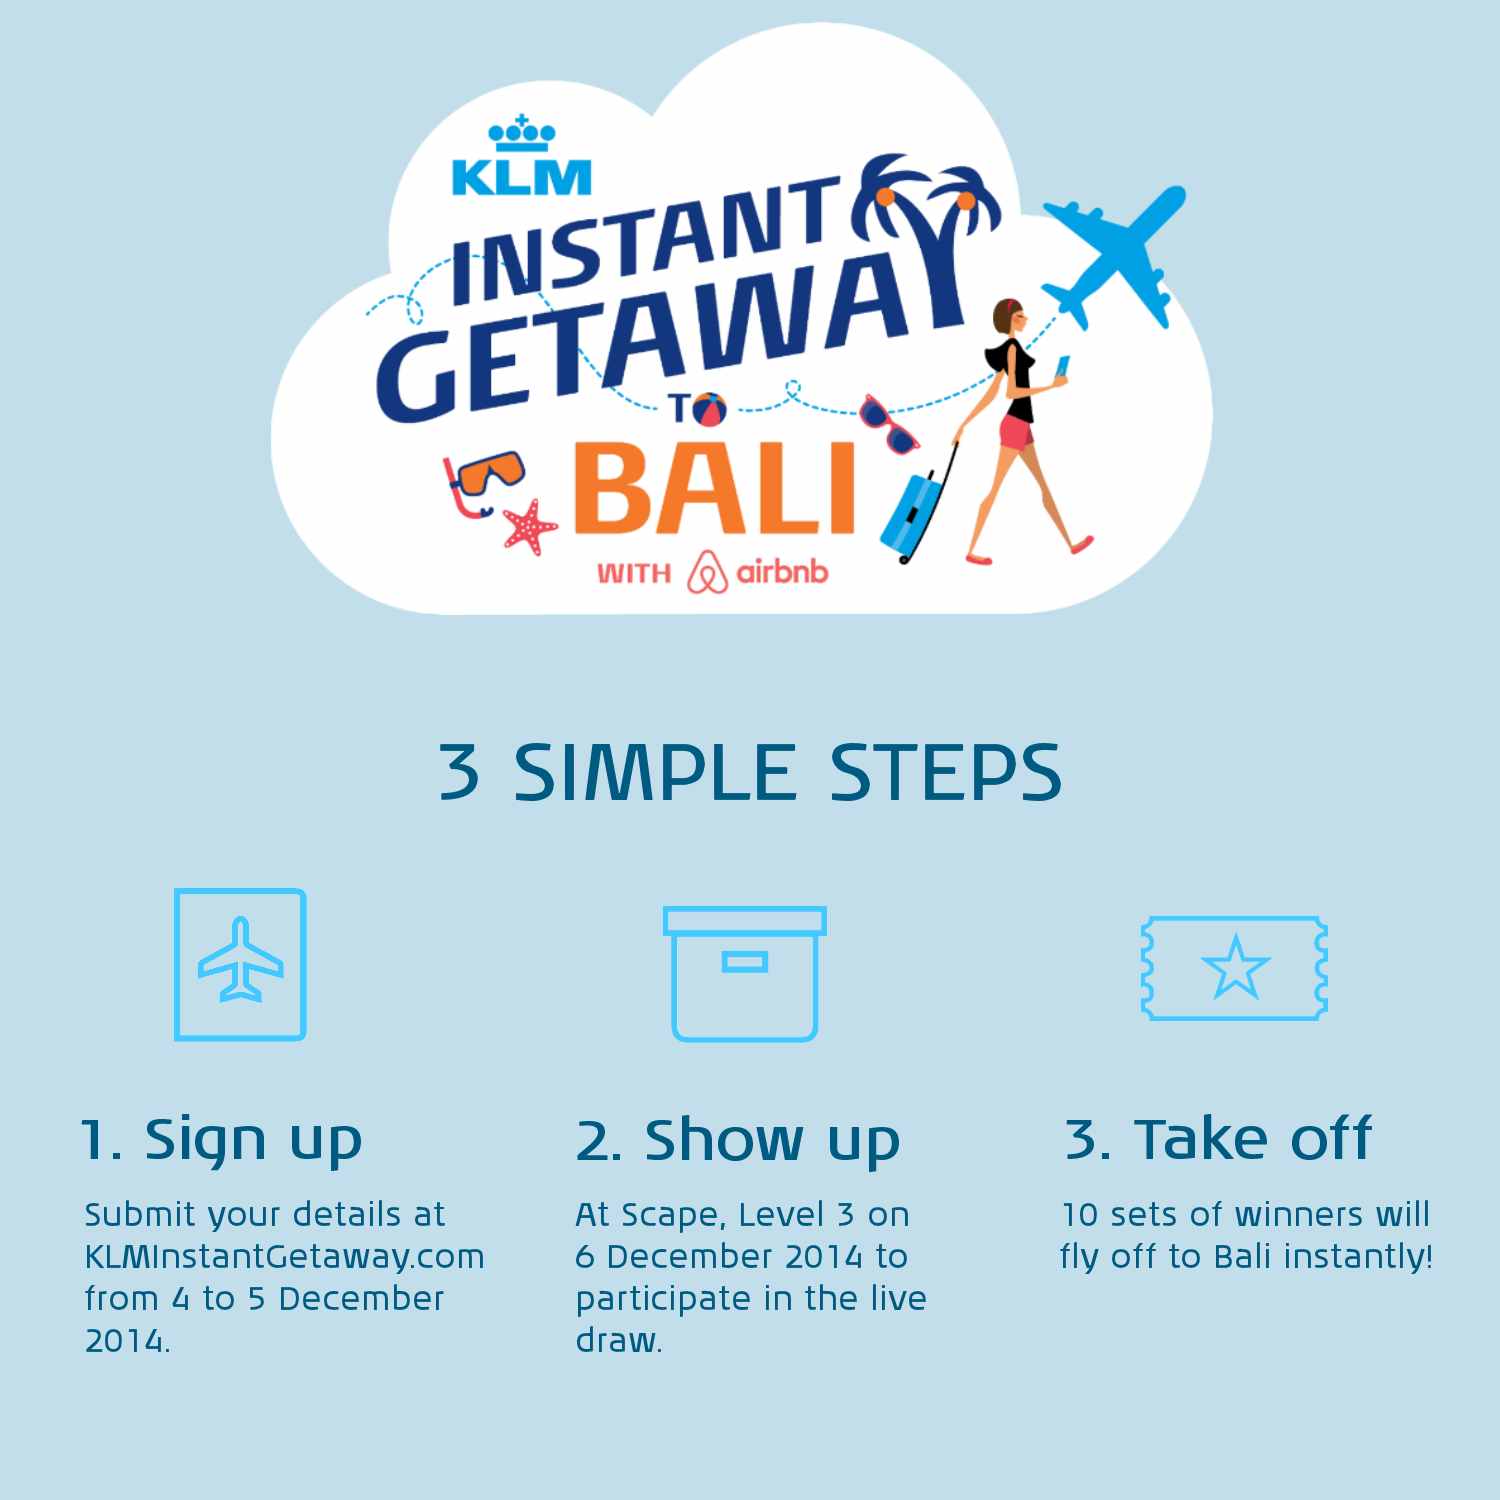 KLM Instant Getaway steps airbnb